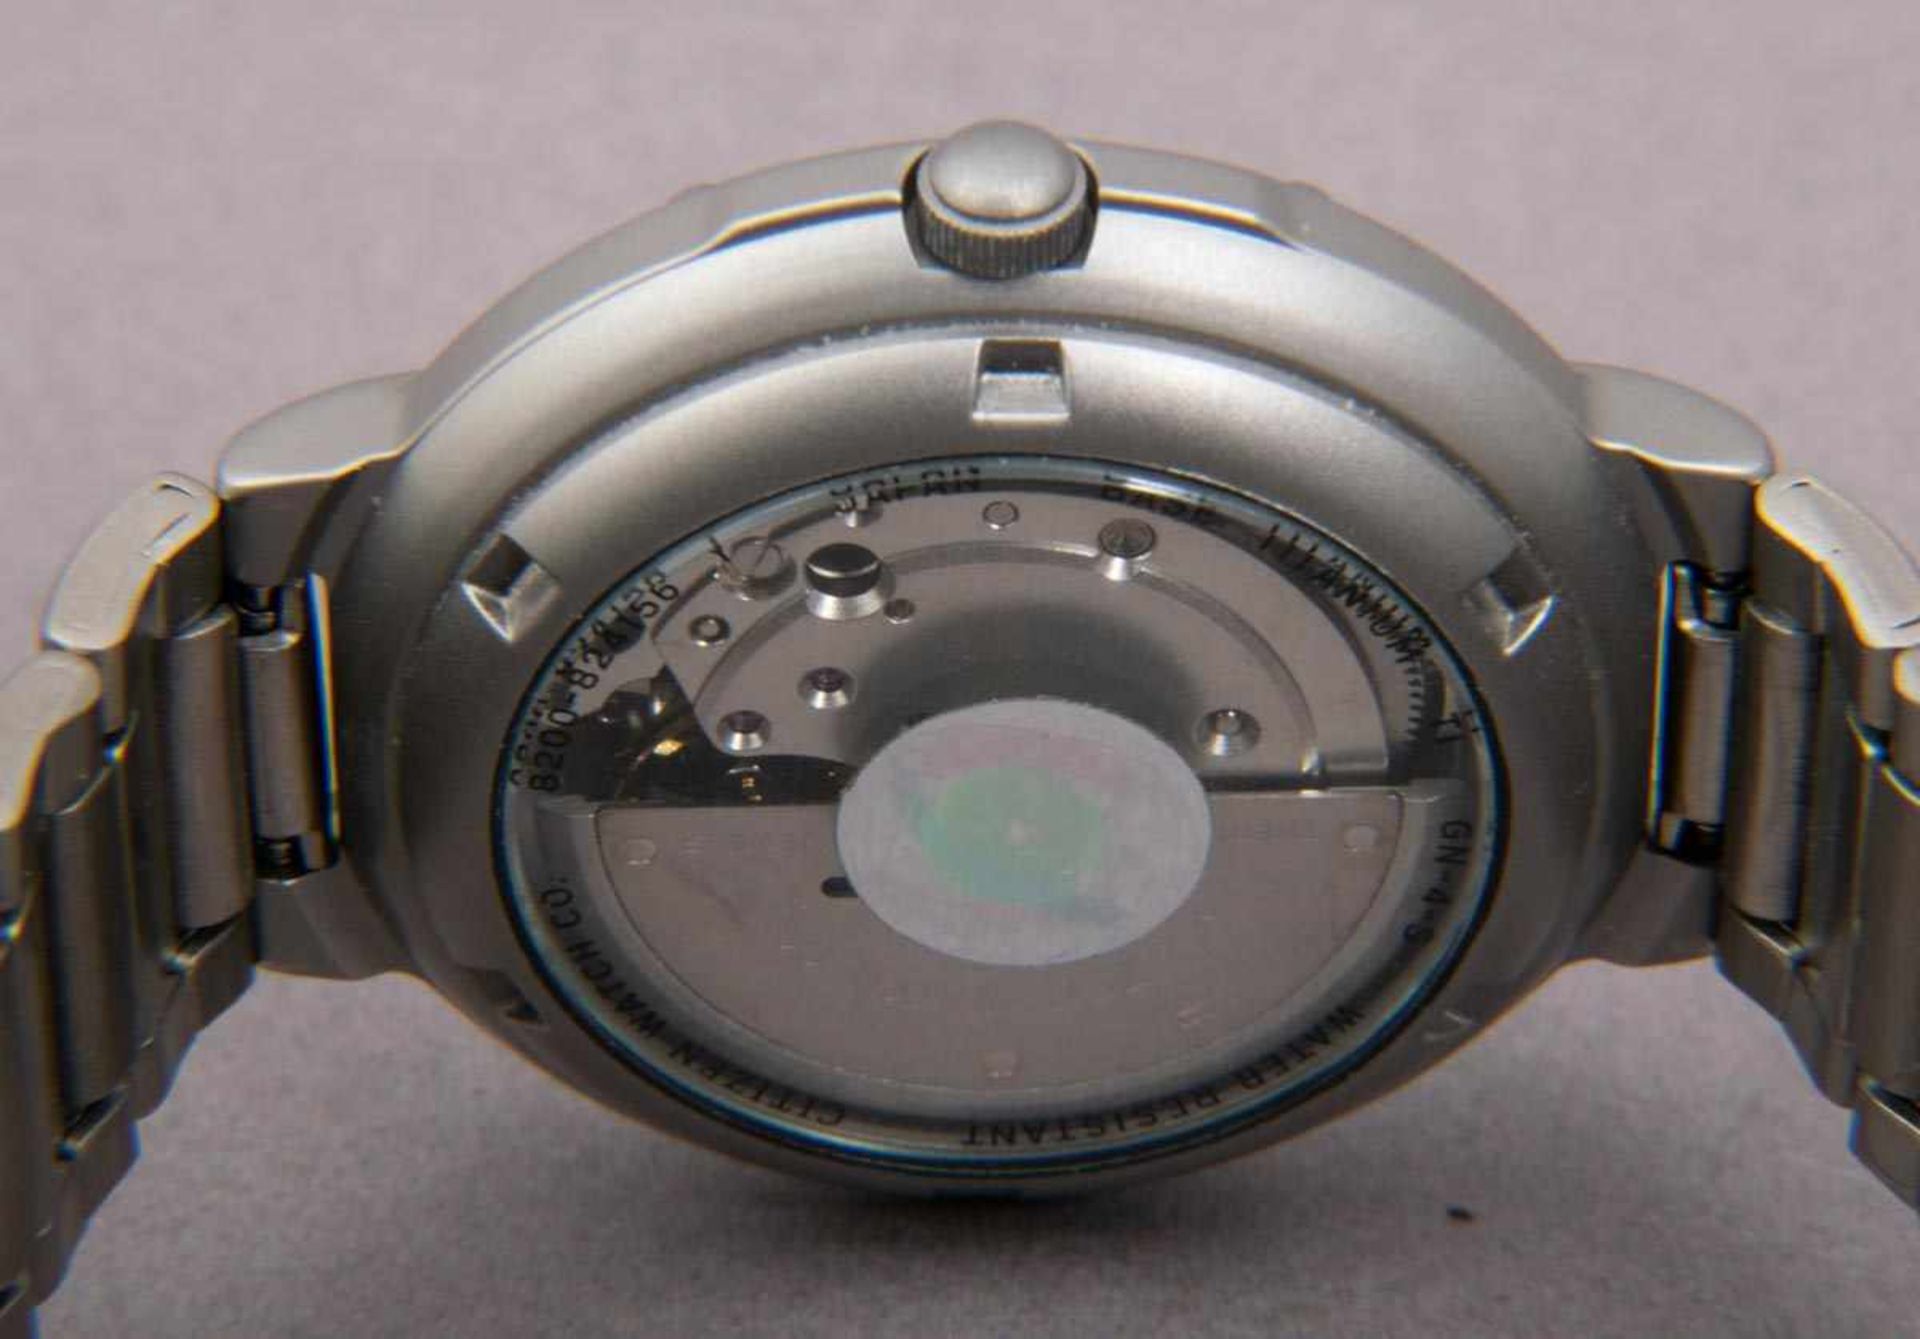 5teiliges Konvolut versch. Armbanduhren, alle ungeprüft. Versch. Alter, Größen, Materialien, - Bild 14 aus 16